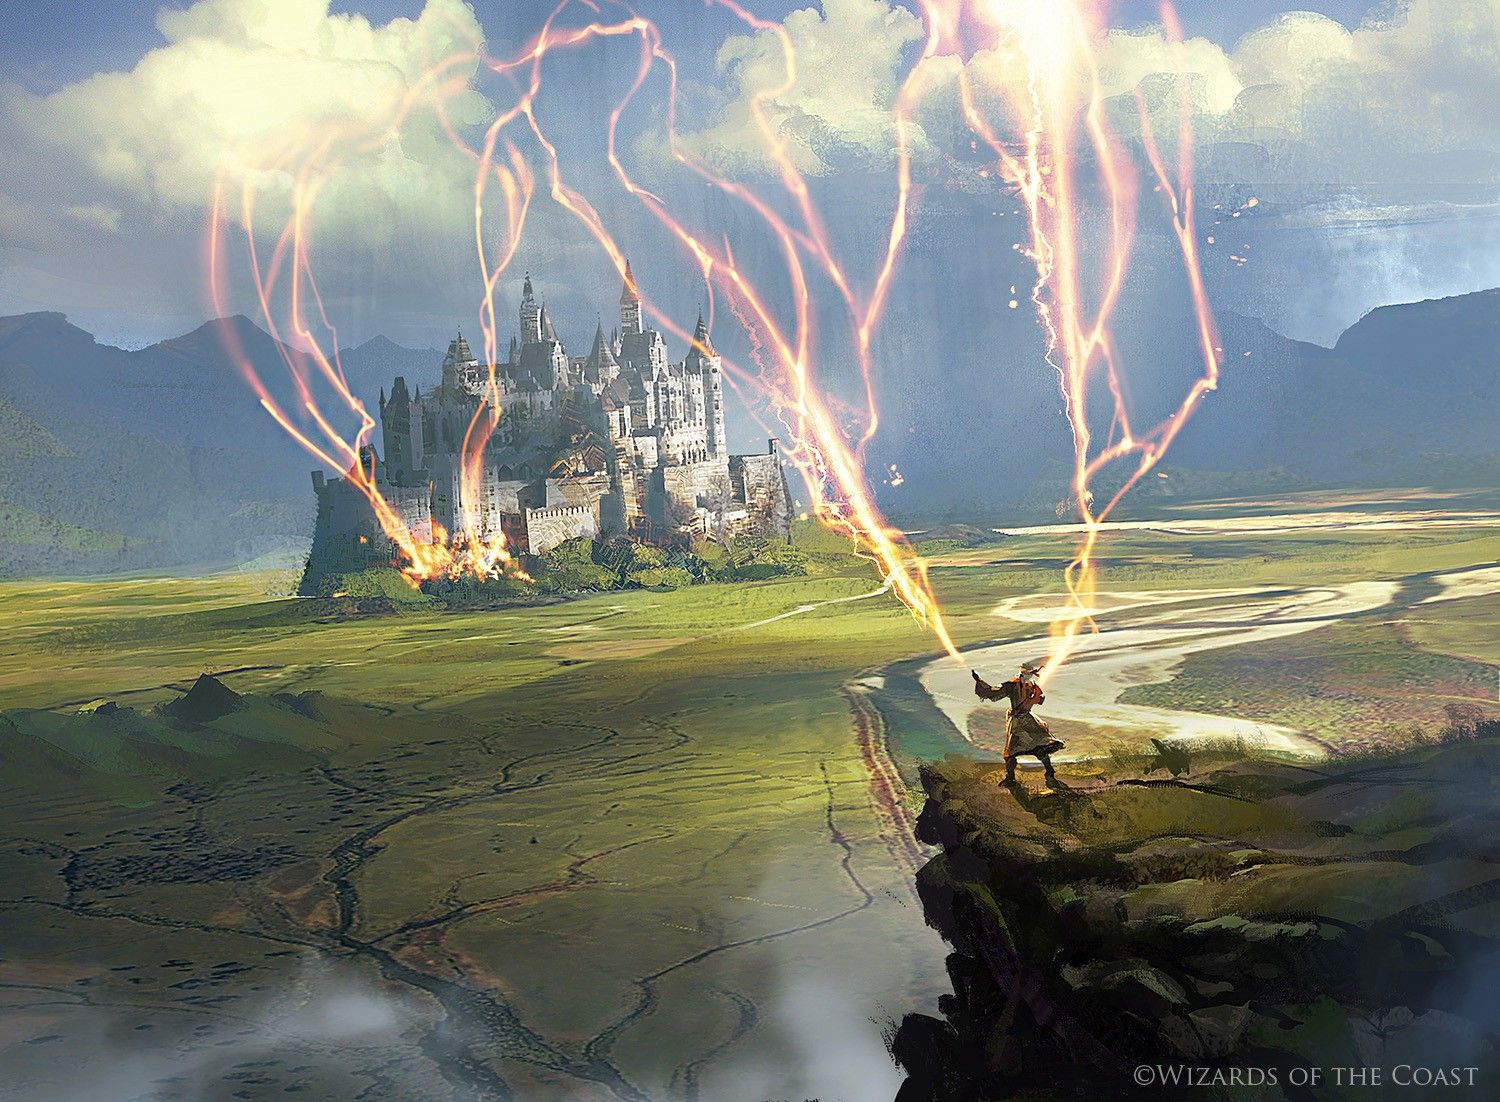 Wizard's Lightning, illustrated by Grzegorz Rutkowski